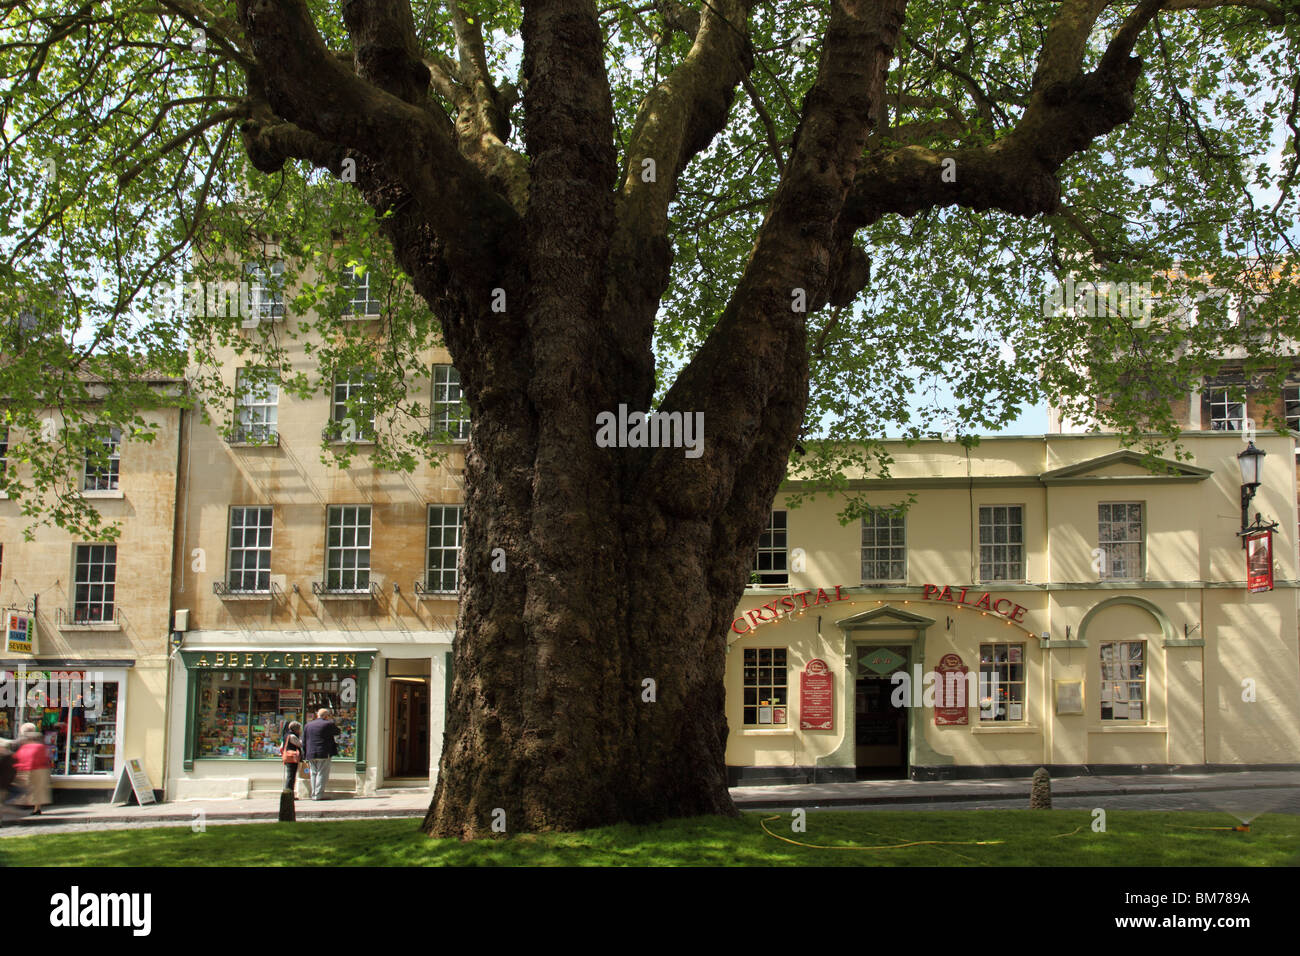 El gigantesco árbol de avión, la Abadía de Bath, Inglaterra, verde Foto de stock